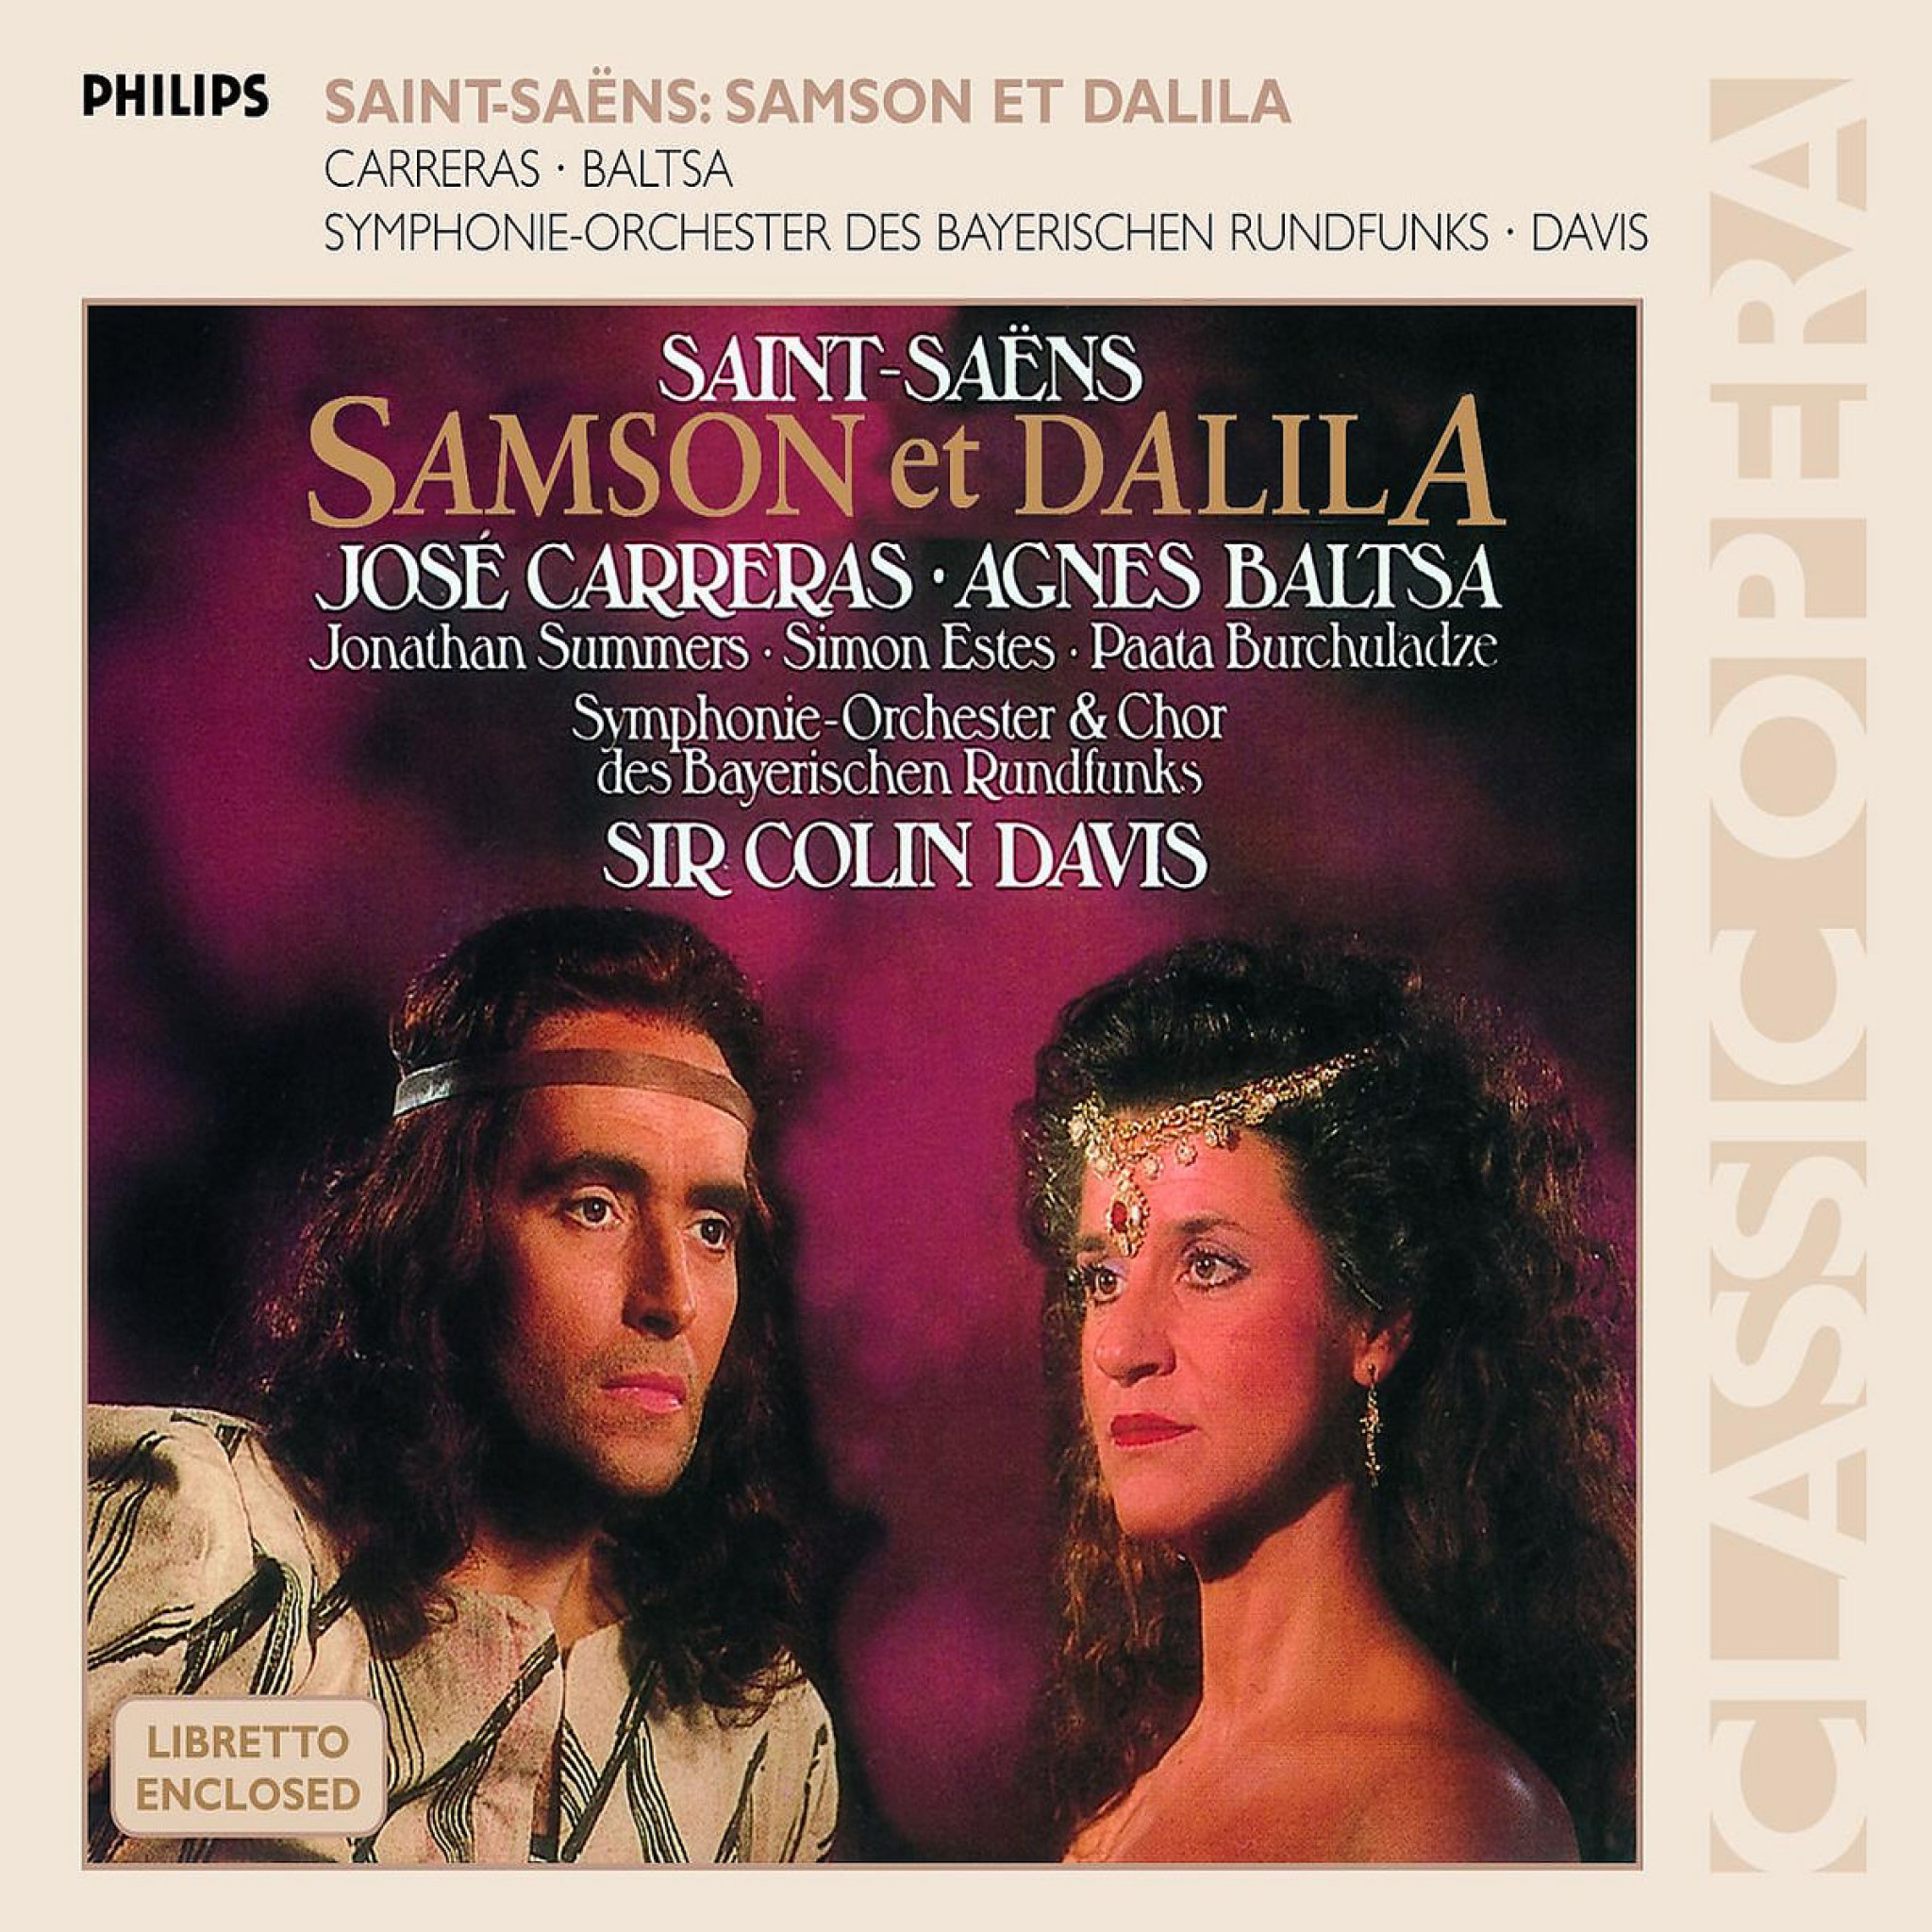 Saint-Saens: Samson et Dalila 0028947587068